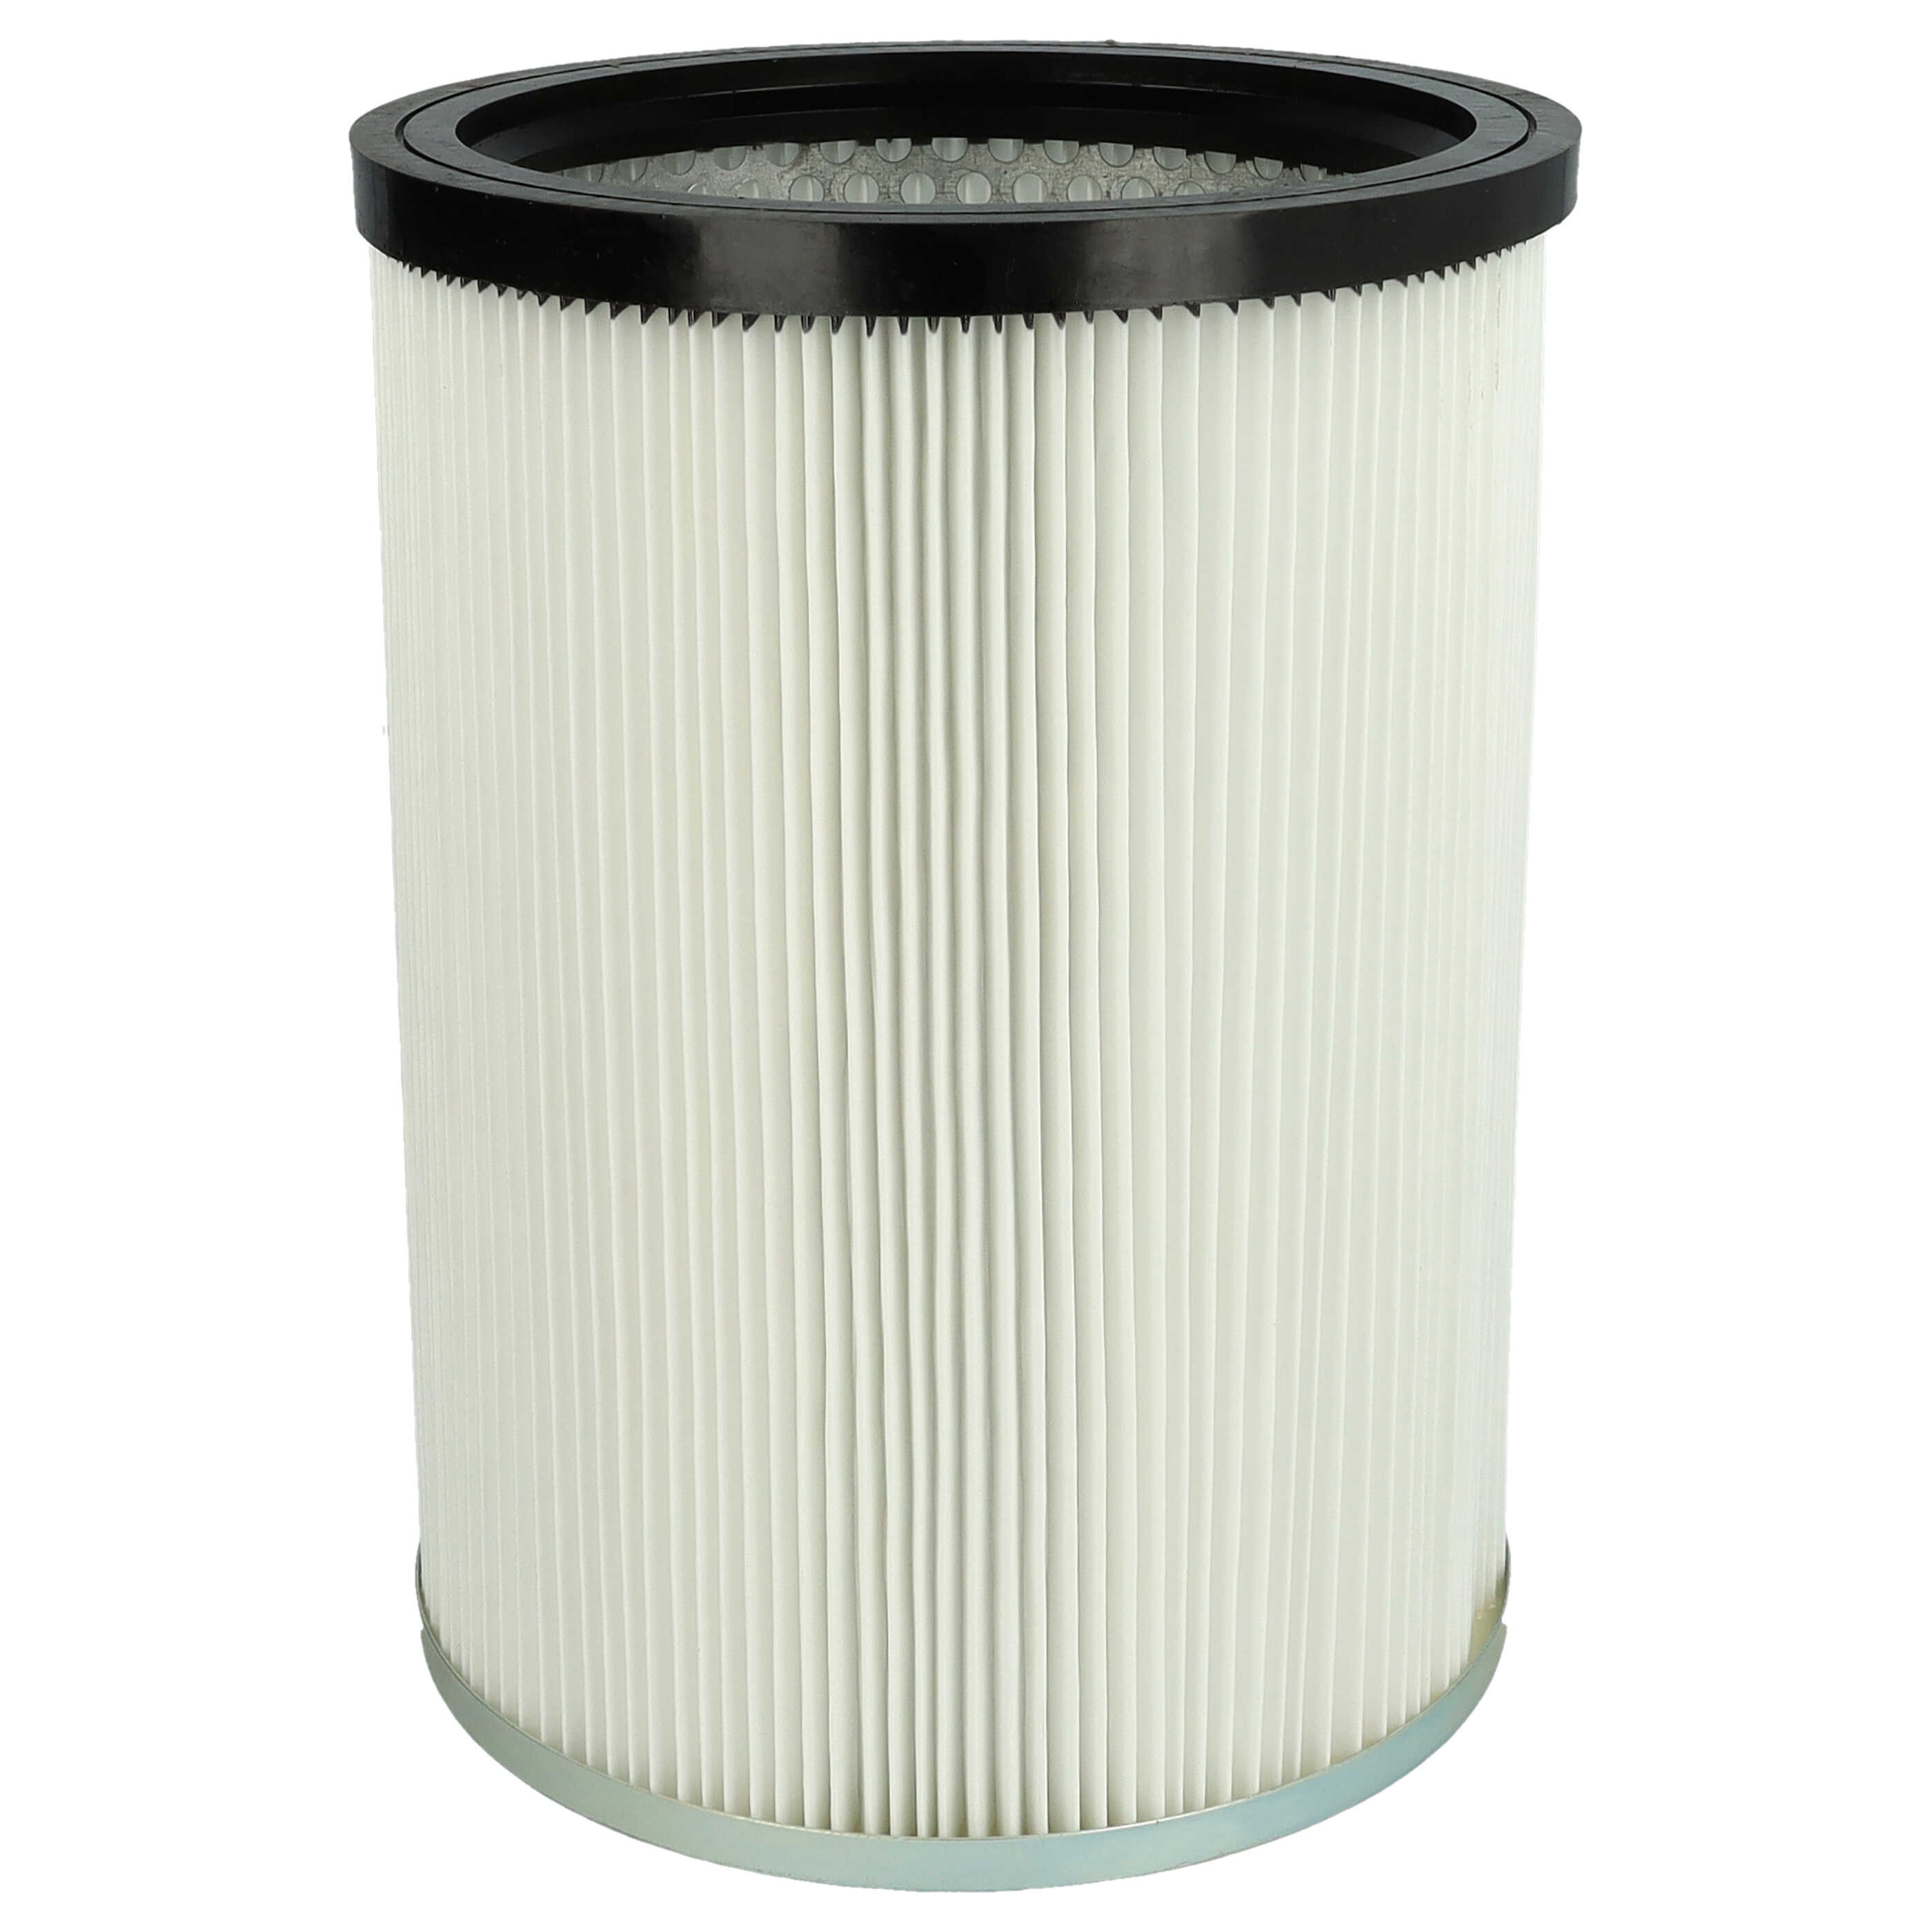 Filtro sostituisce Kärcher 9.770-988.0, 6.907-038.0 per aspirapolvere - filtro cartucce, bianco